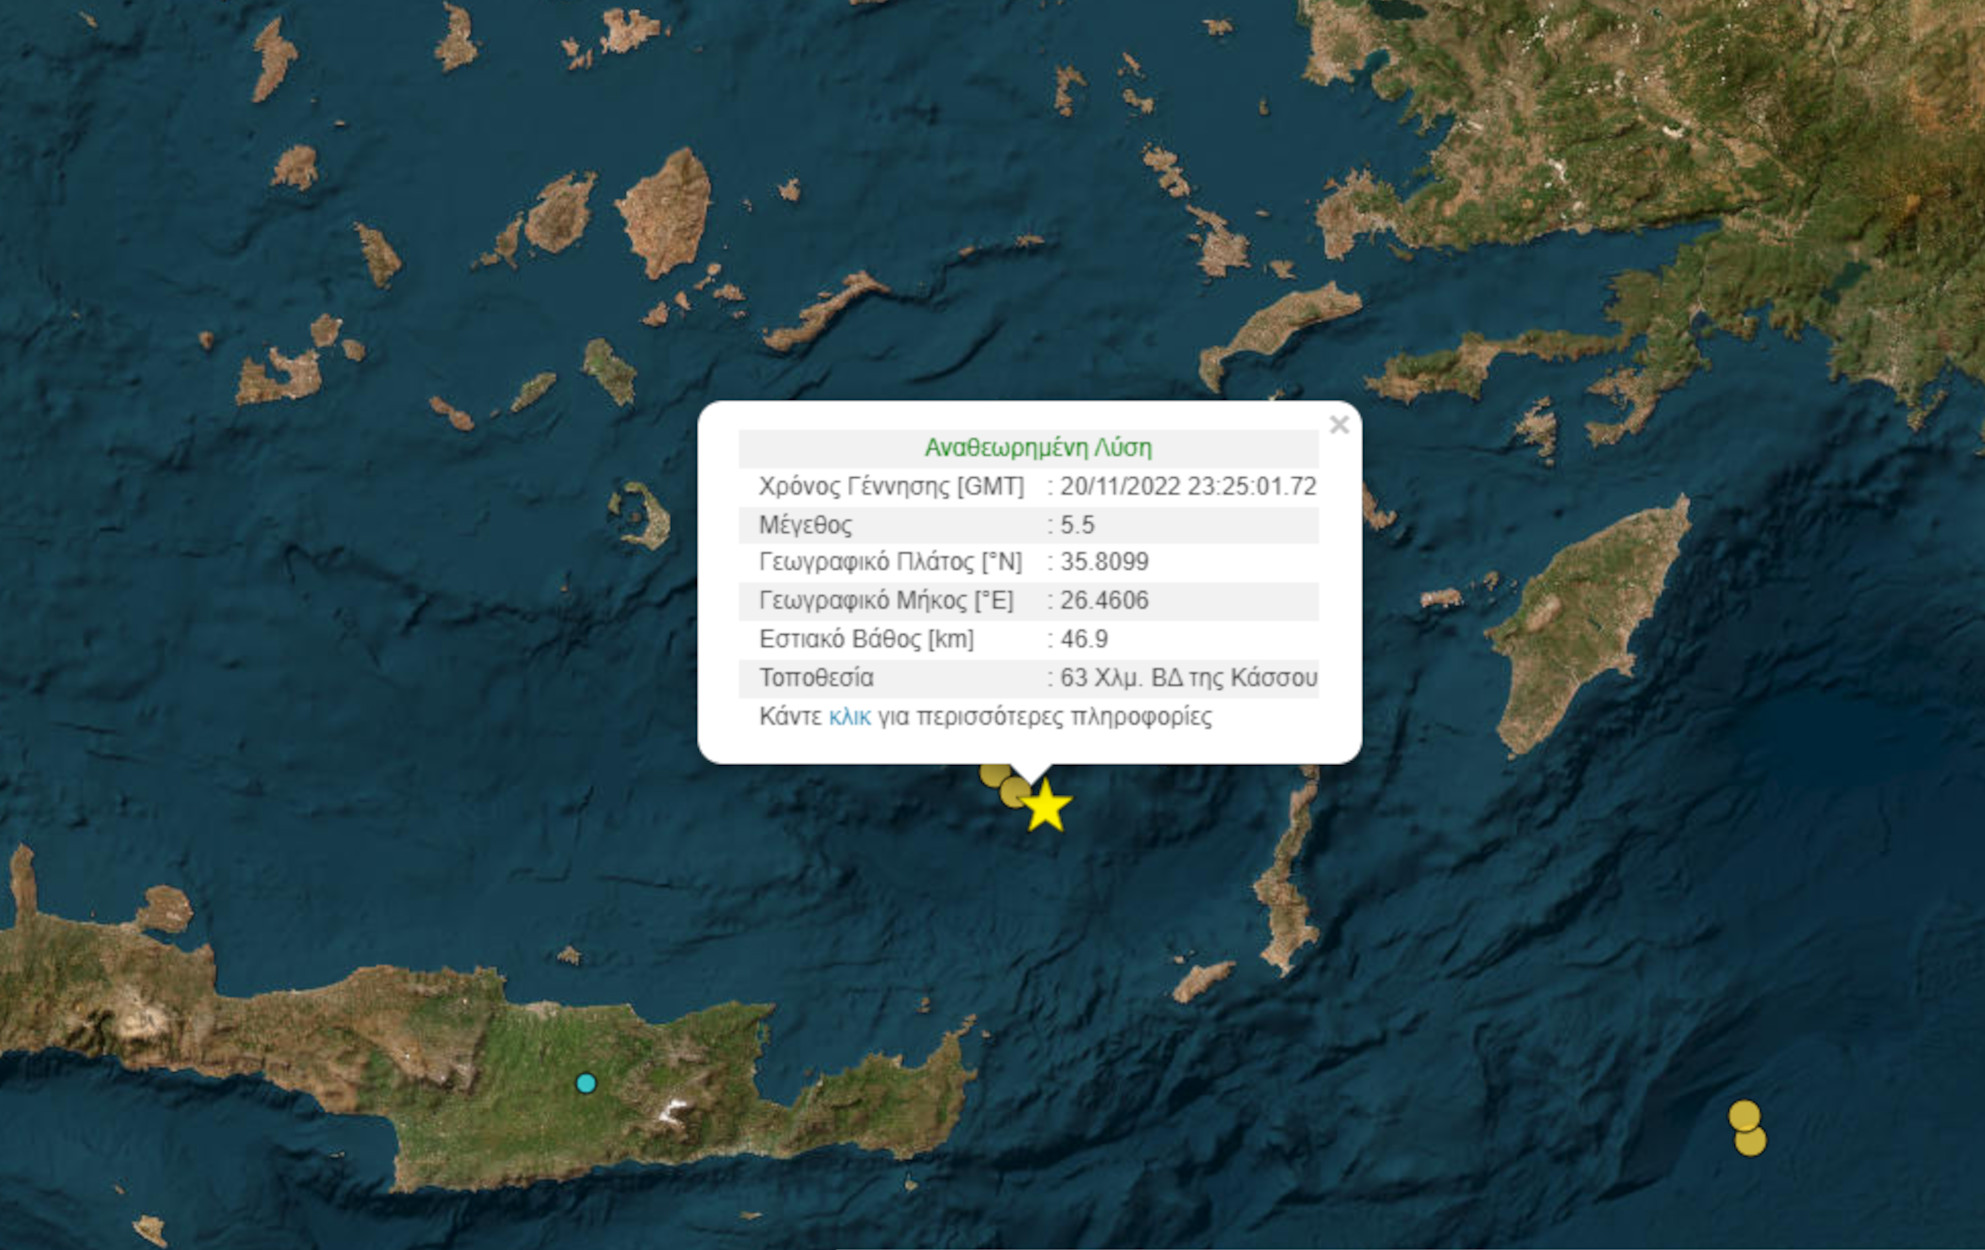 Σεισμός στην Κρήτη – Ευθύμης Λέκκας: Καμία ανησυχία, δε θα υπάρξει πλούσια μετασεισμική ακολουθία